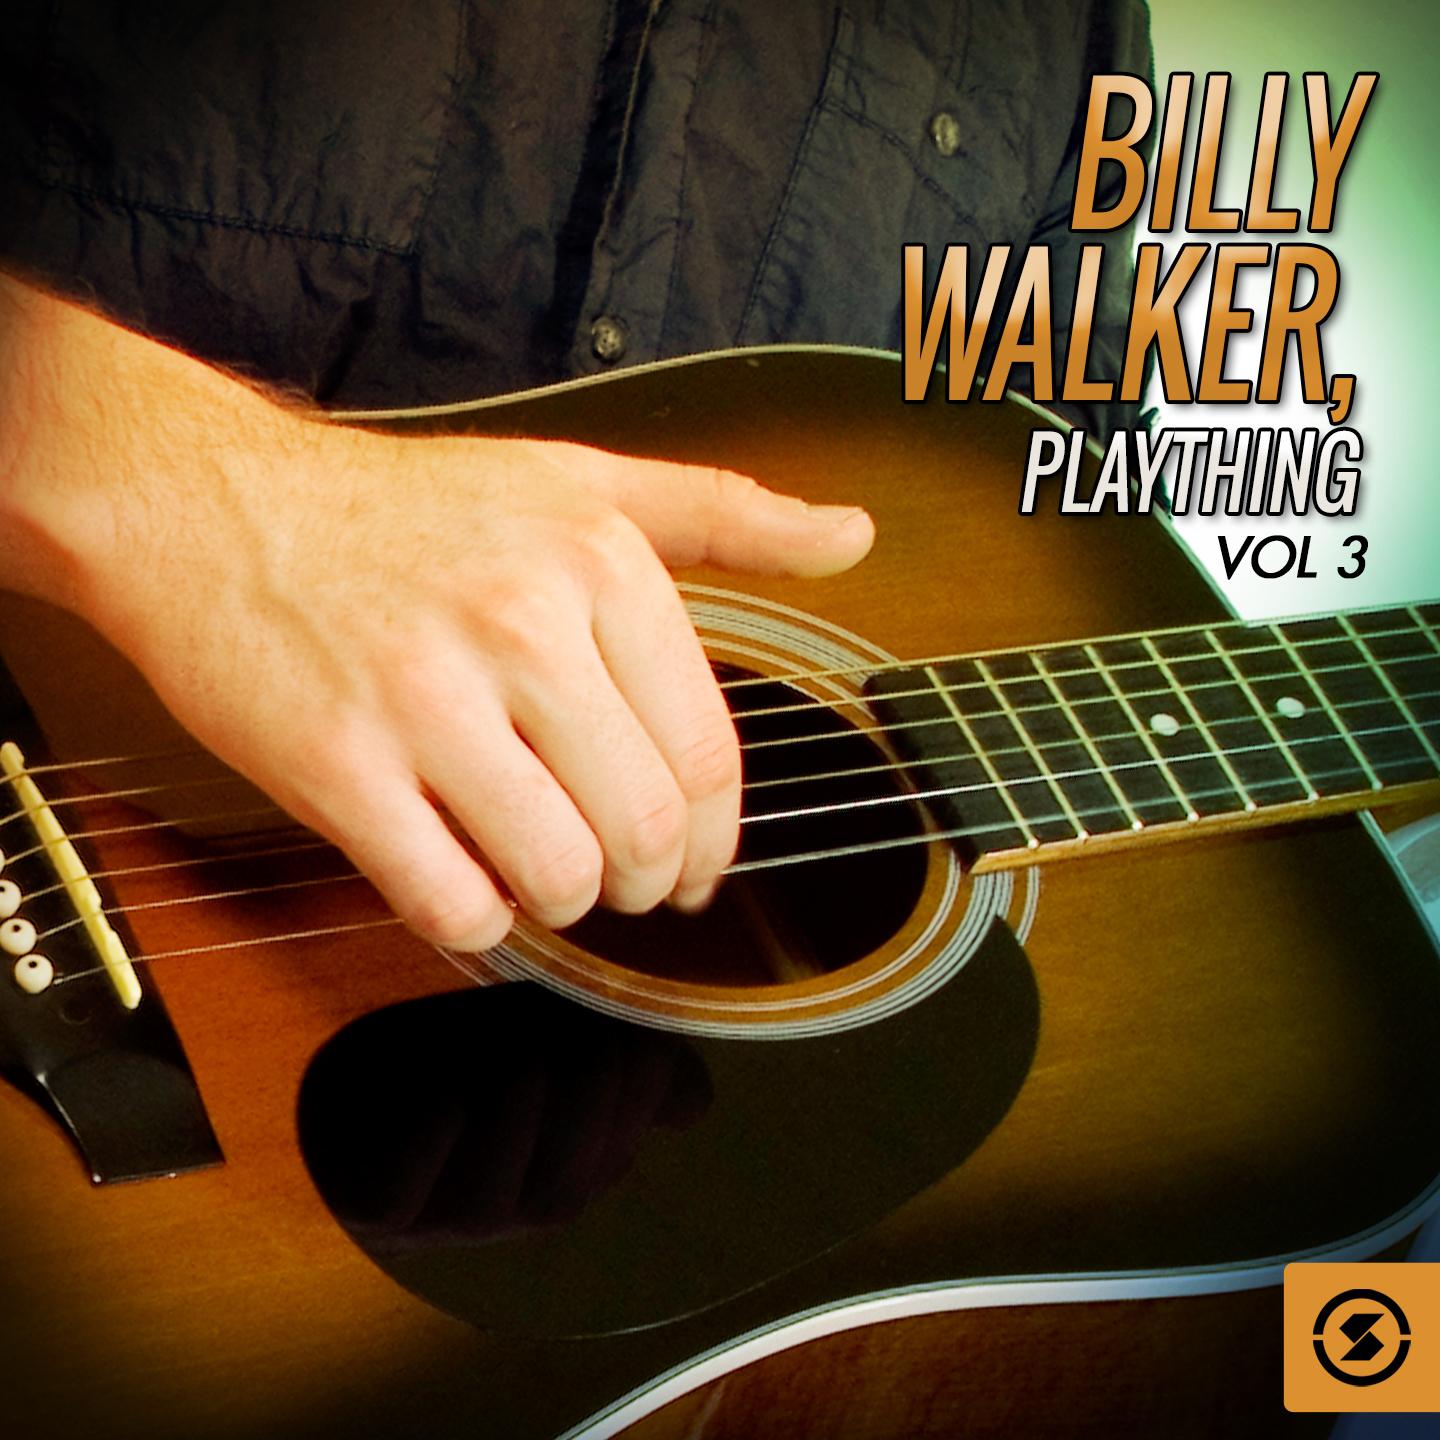 Billy Walker, Plaything, Vol. 3